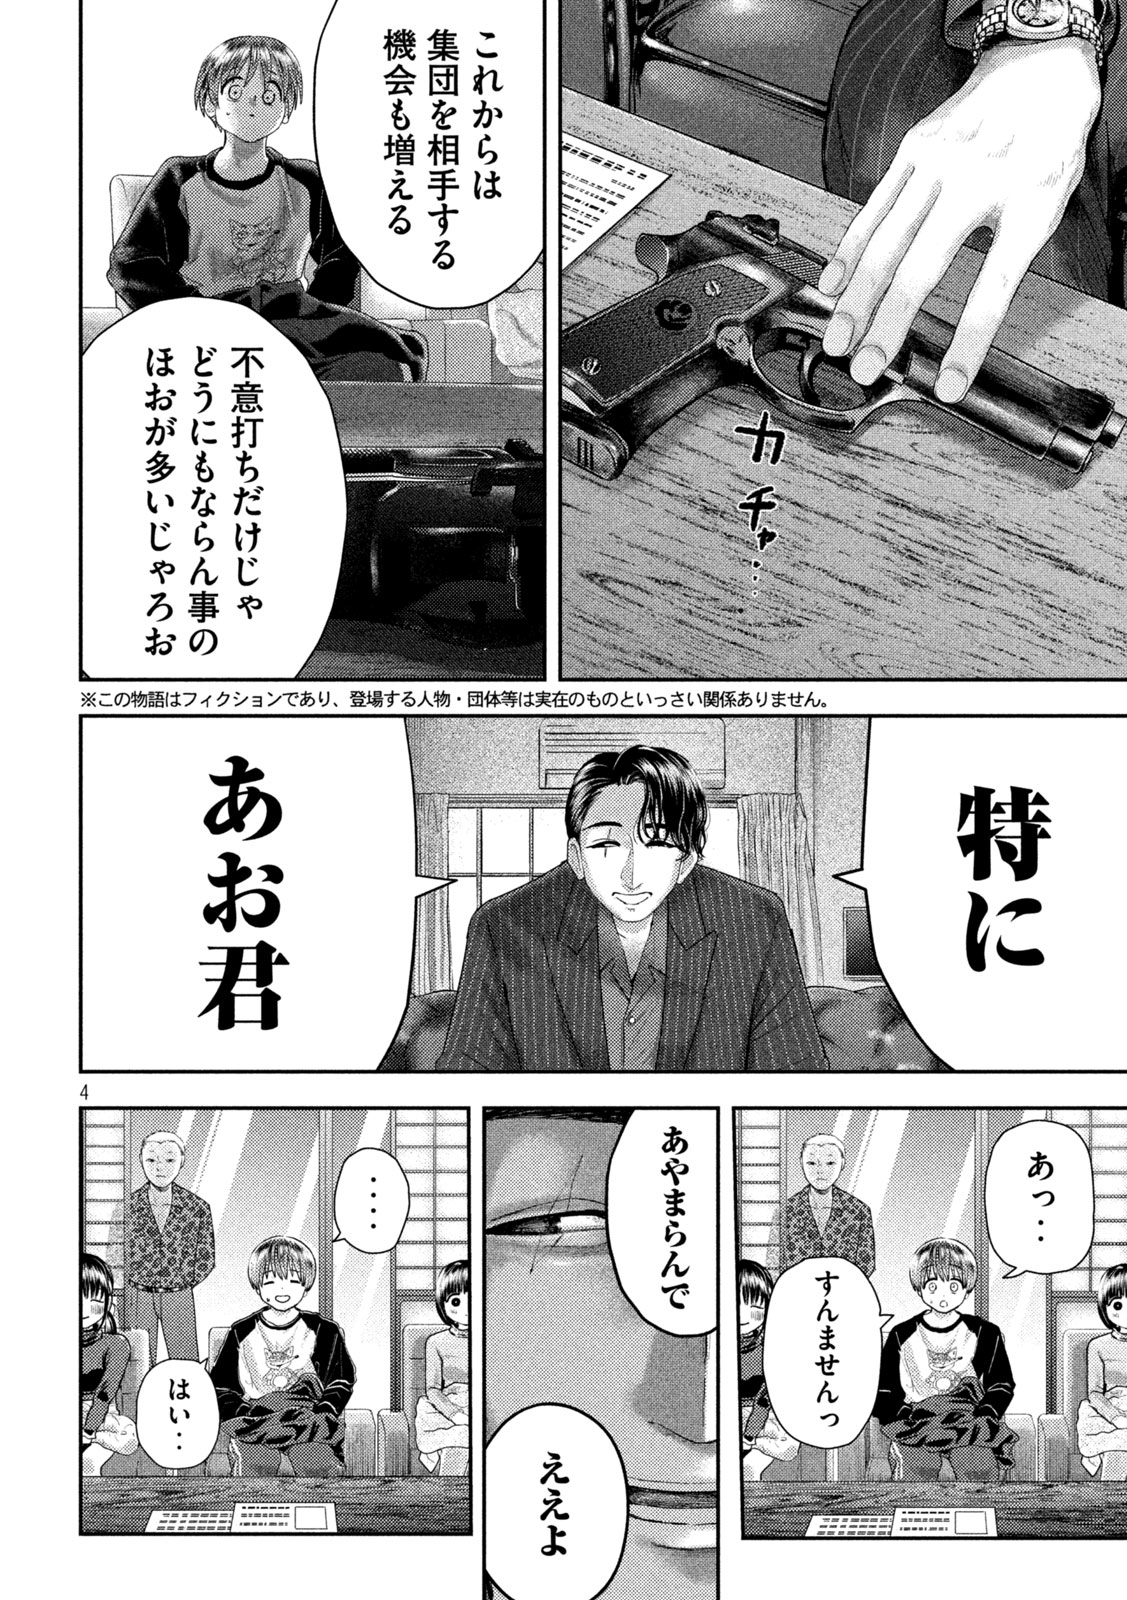 Nezumi no Koi - Chapter 31 - Page 4